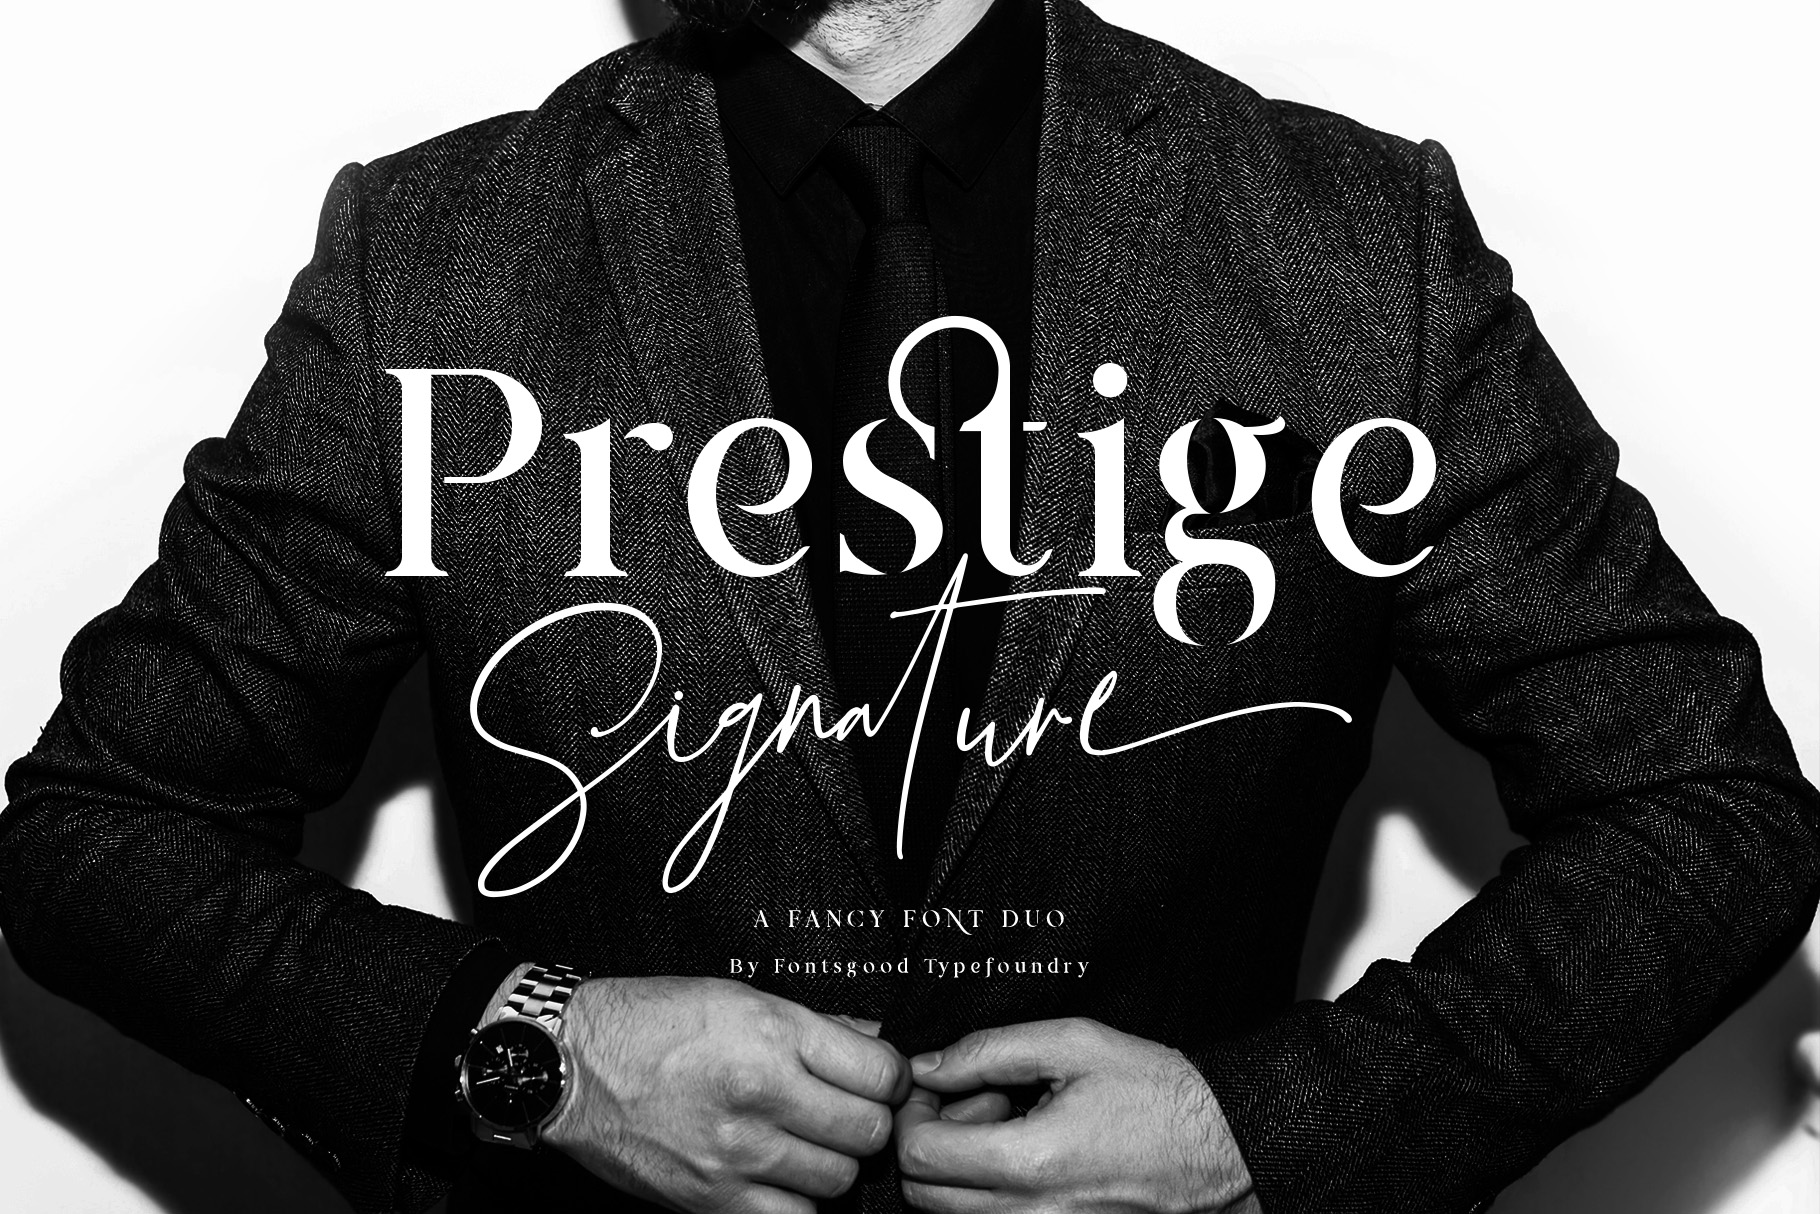 Prestige Signature大气签名手写连笔英文字体下载插图